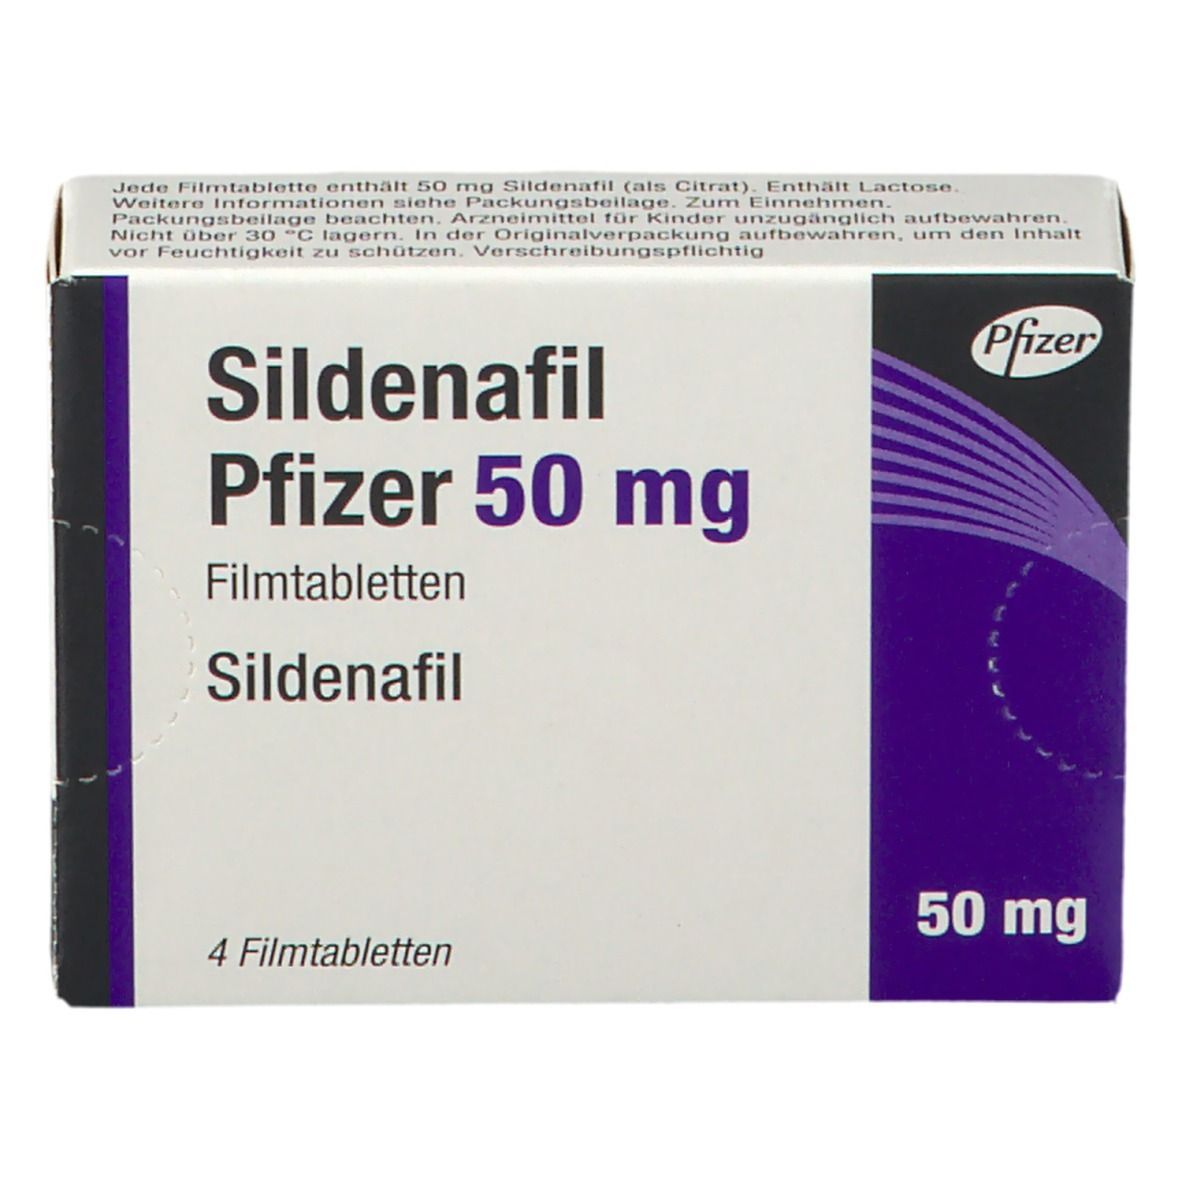 Sildenafil Pfizer 50 mg